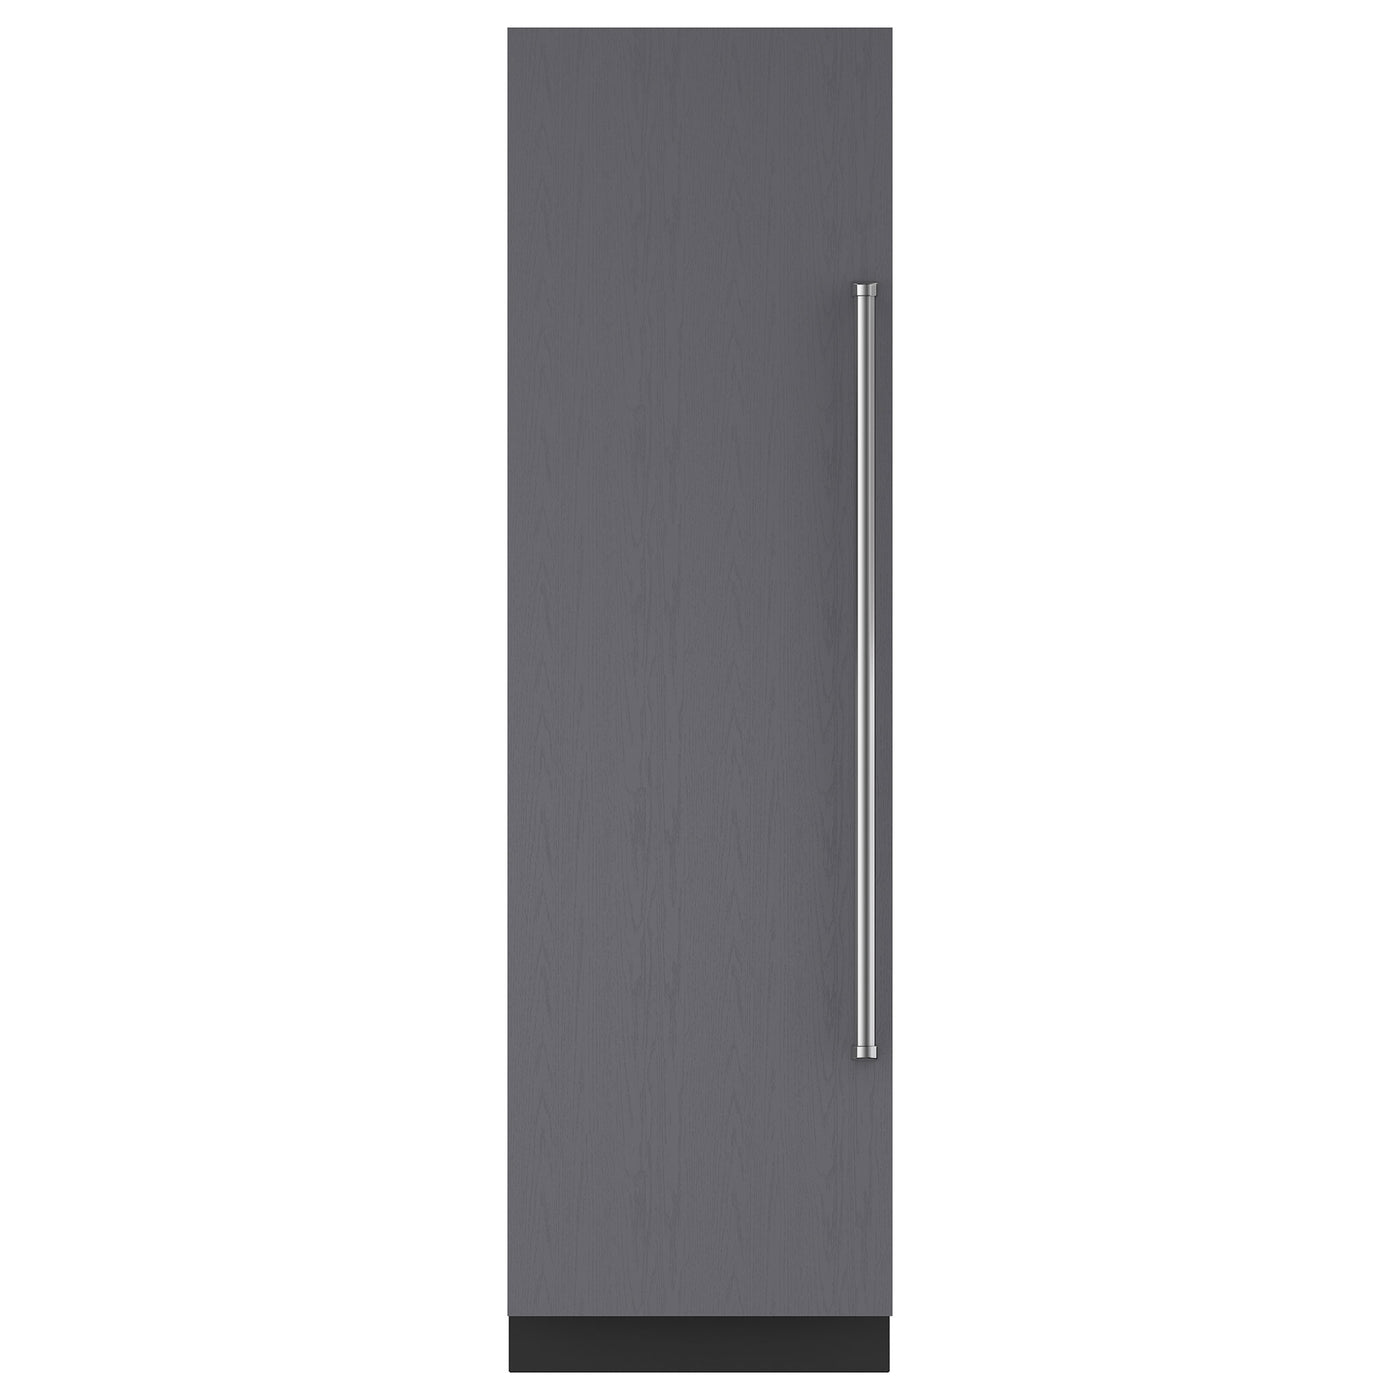 SubZero-Refrigerator-DEC2450R/L